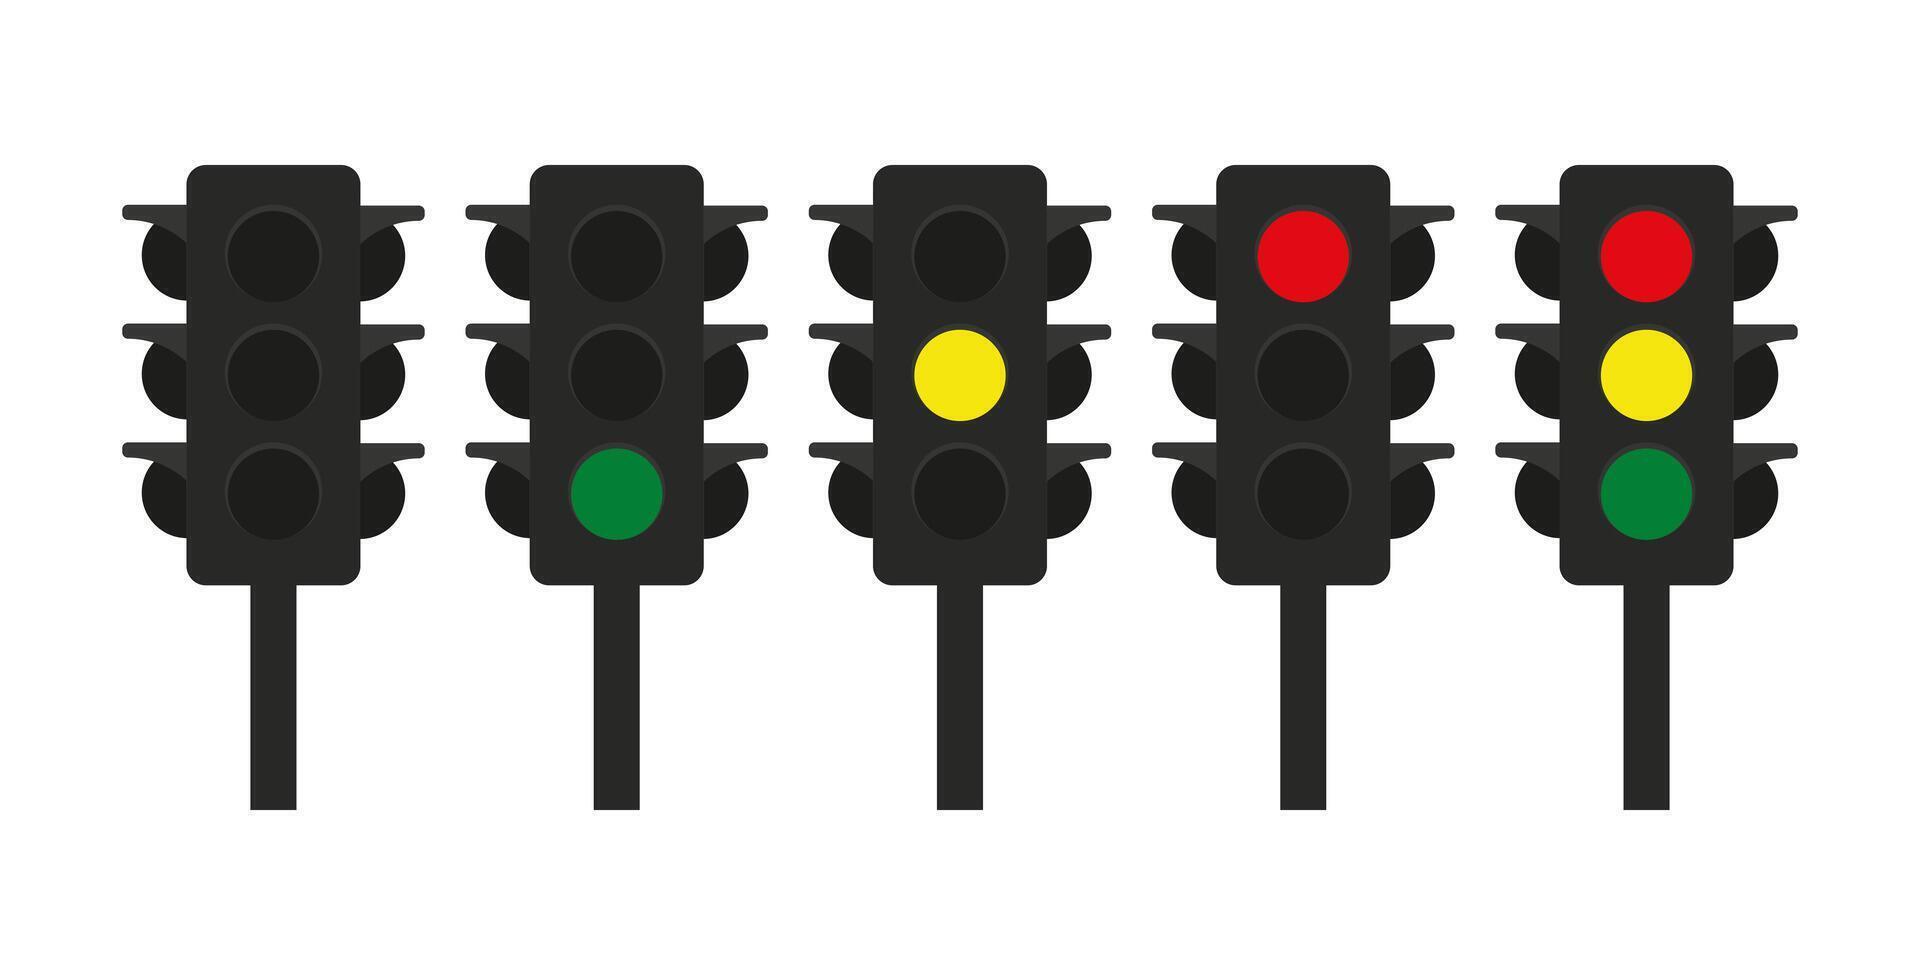 tráfego sinal ou tráfego luz controlando a fluxo do veículos com vermelho, amarelo, e verde luzes. tráfego sinal, tráfego luz, sinalização, interseção. vetor